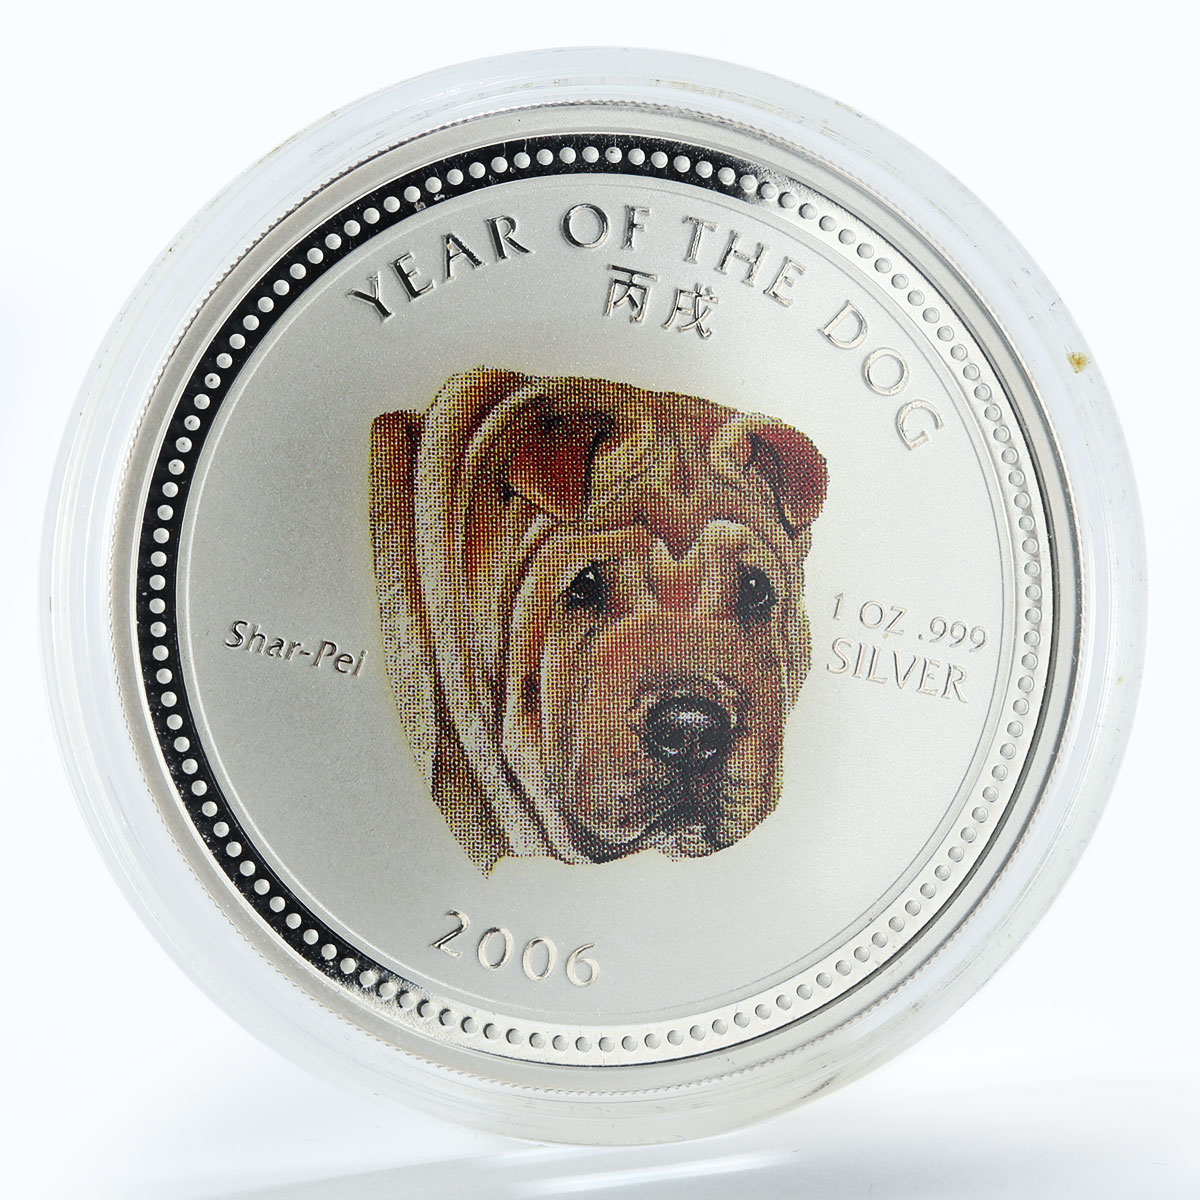 Cambodia 3000 riels Lunar Calendar Year of the Dog Shar Pei silver coin 2006